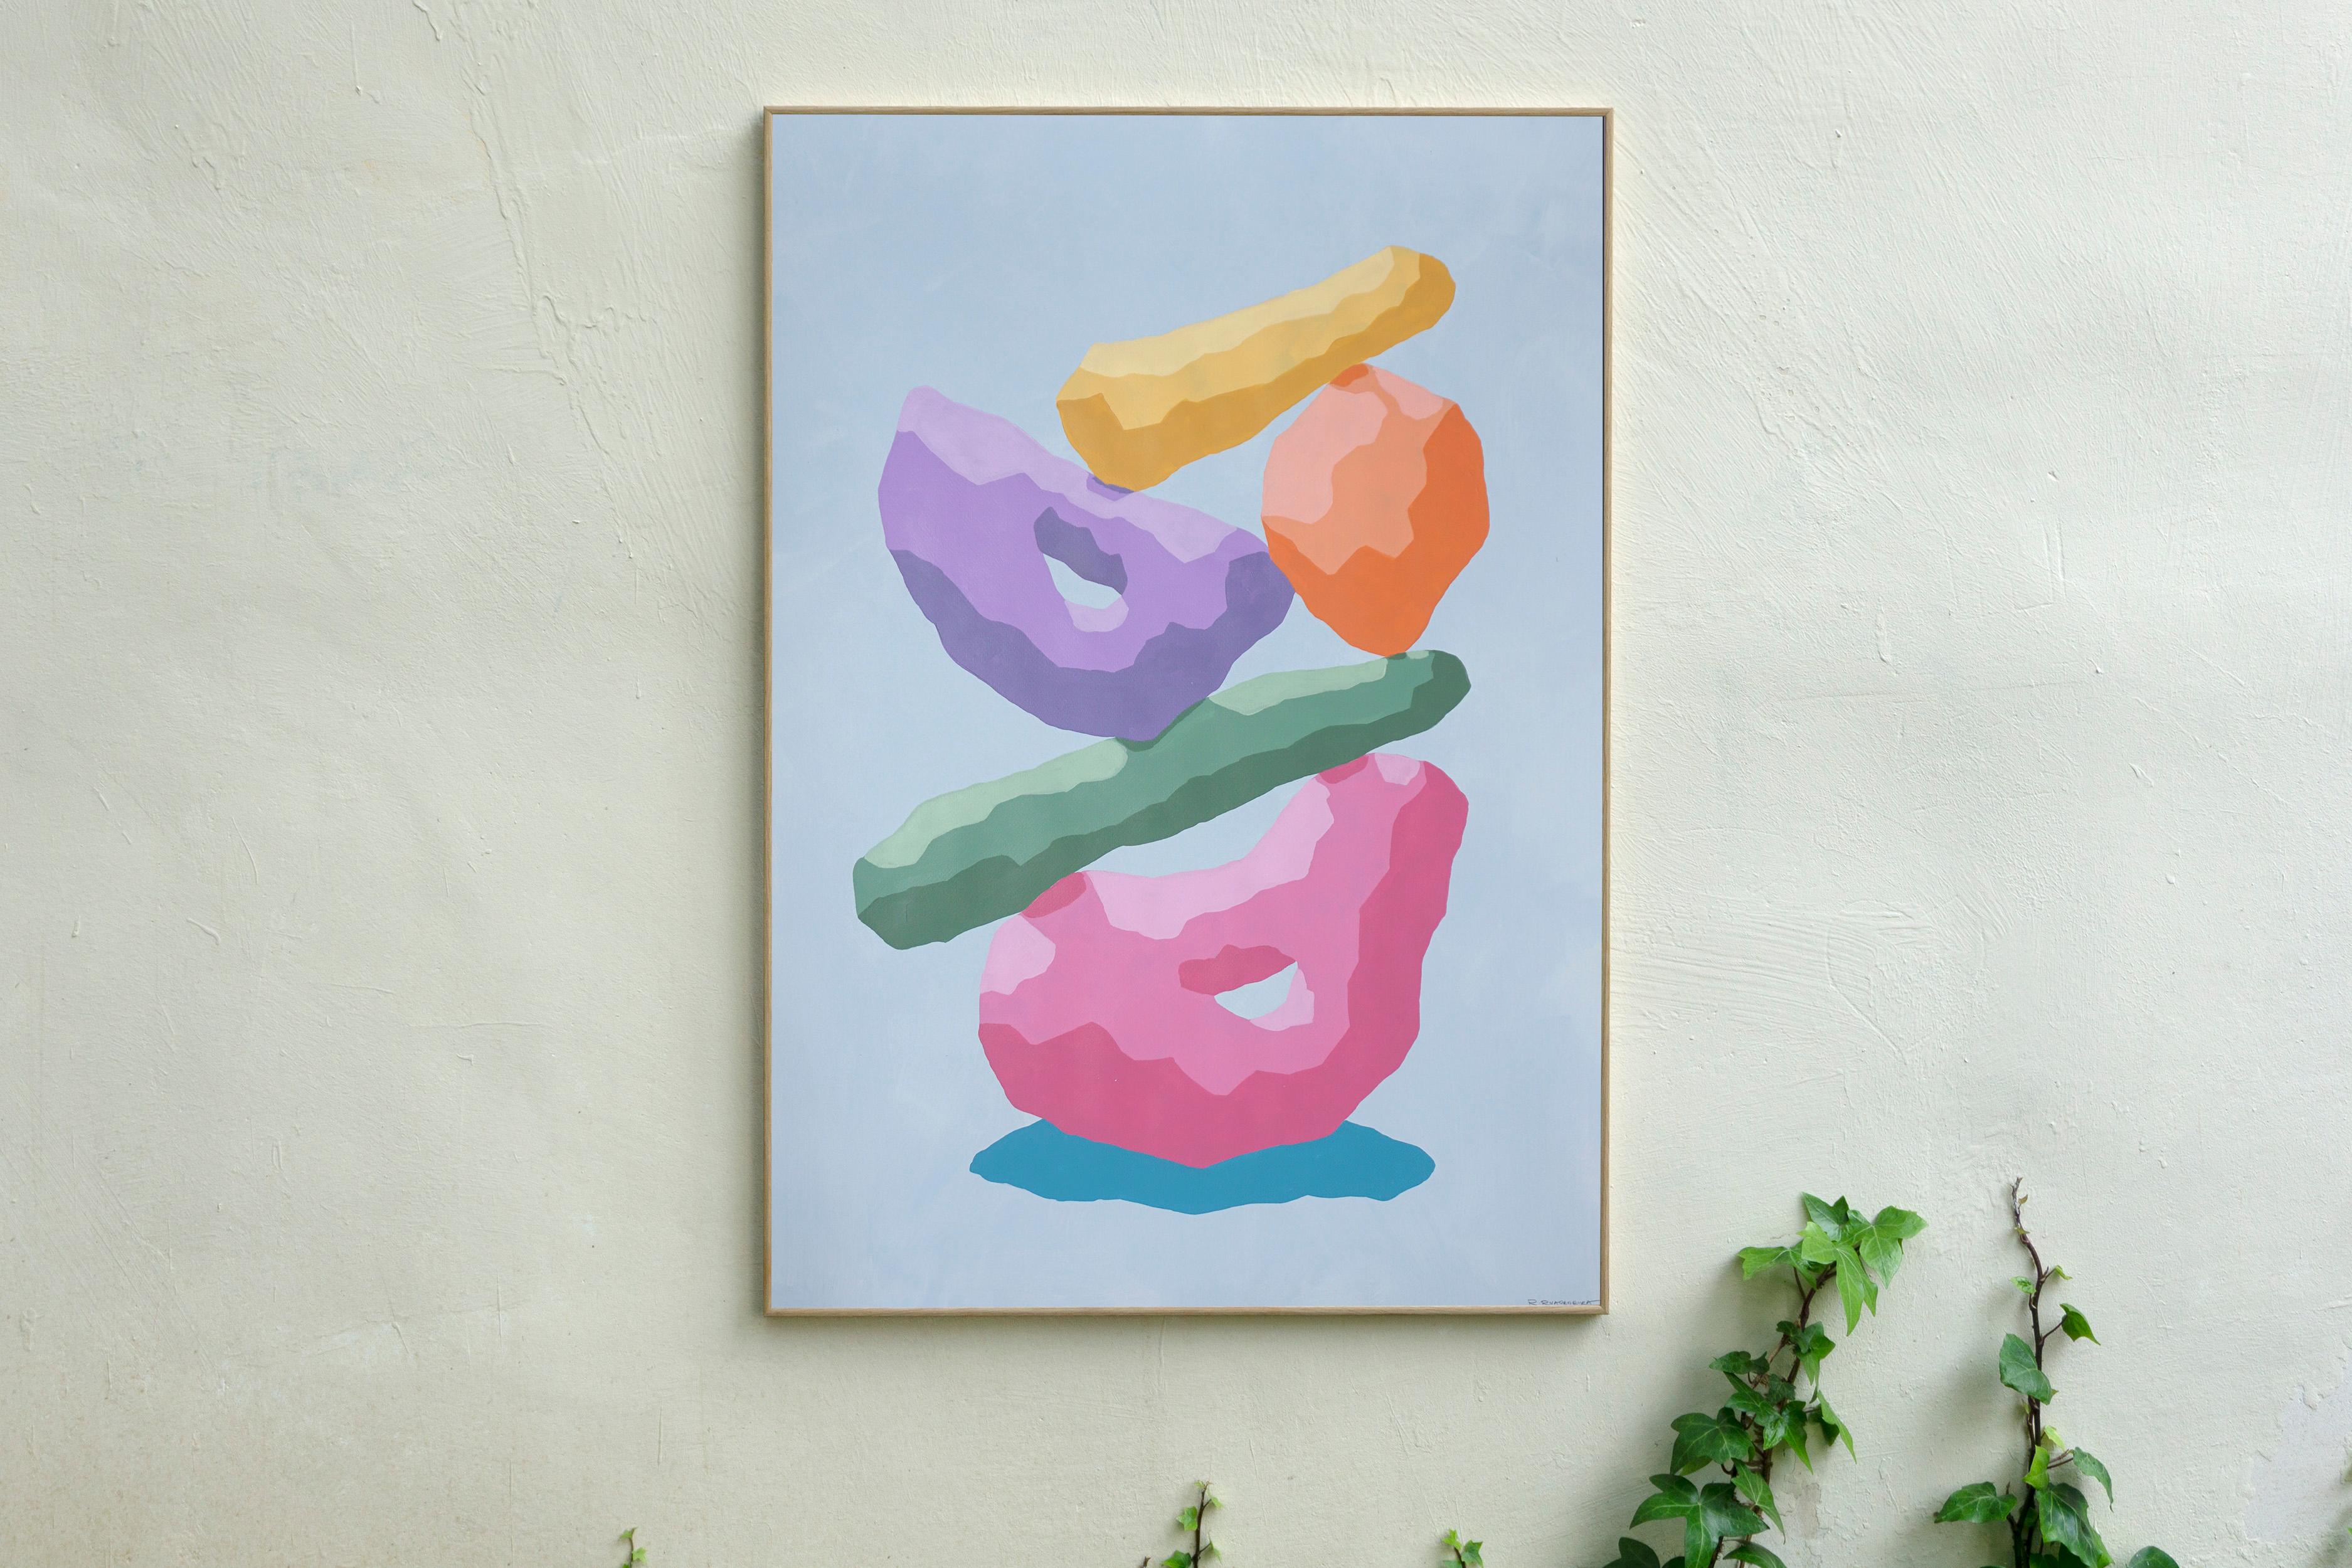 Regenbogen-Totem, Pastelltöne, Skulptur im 3D- Render-Stil, Rosa, Blau, Gelbtöne (Synthetischer Kubismus), Painting, von Ryan Rivadeneyra